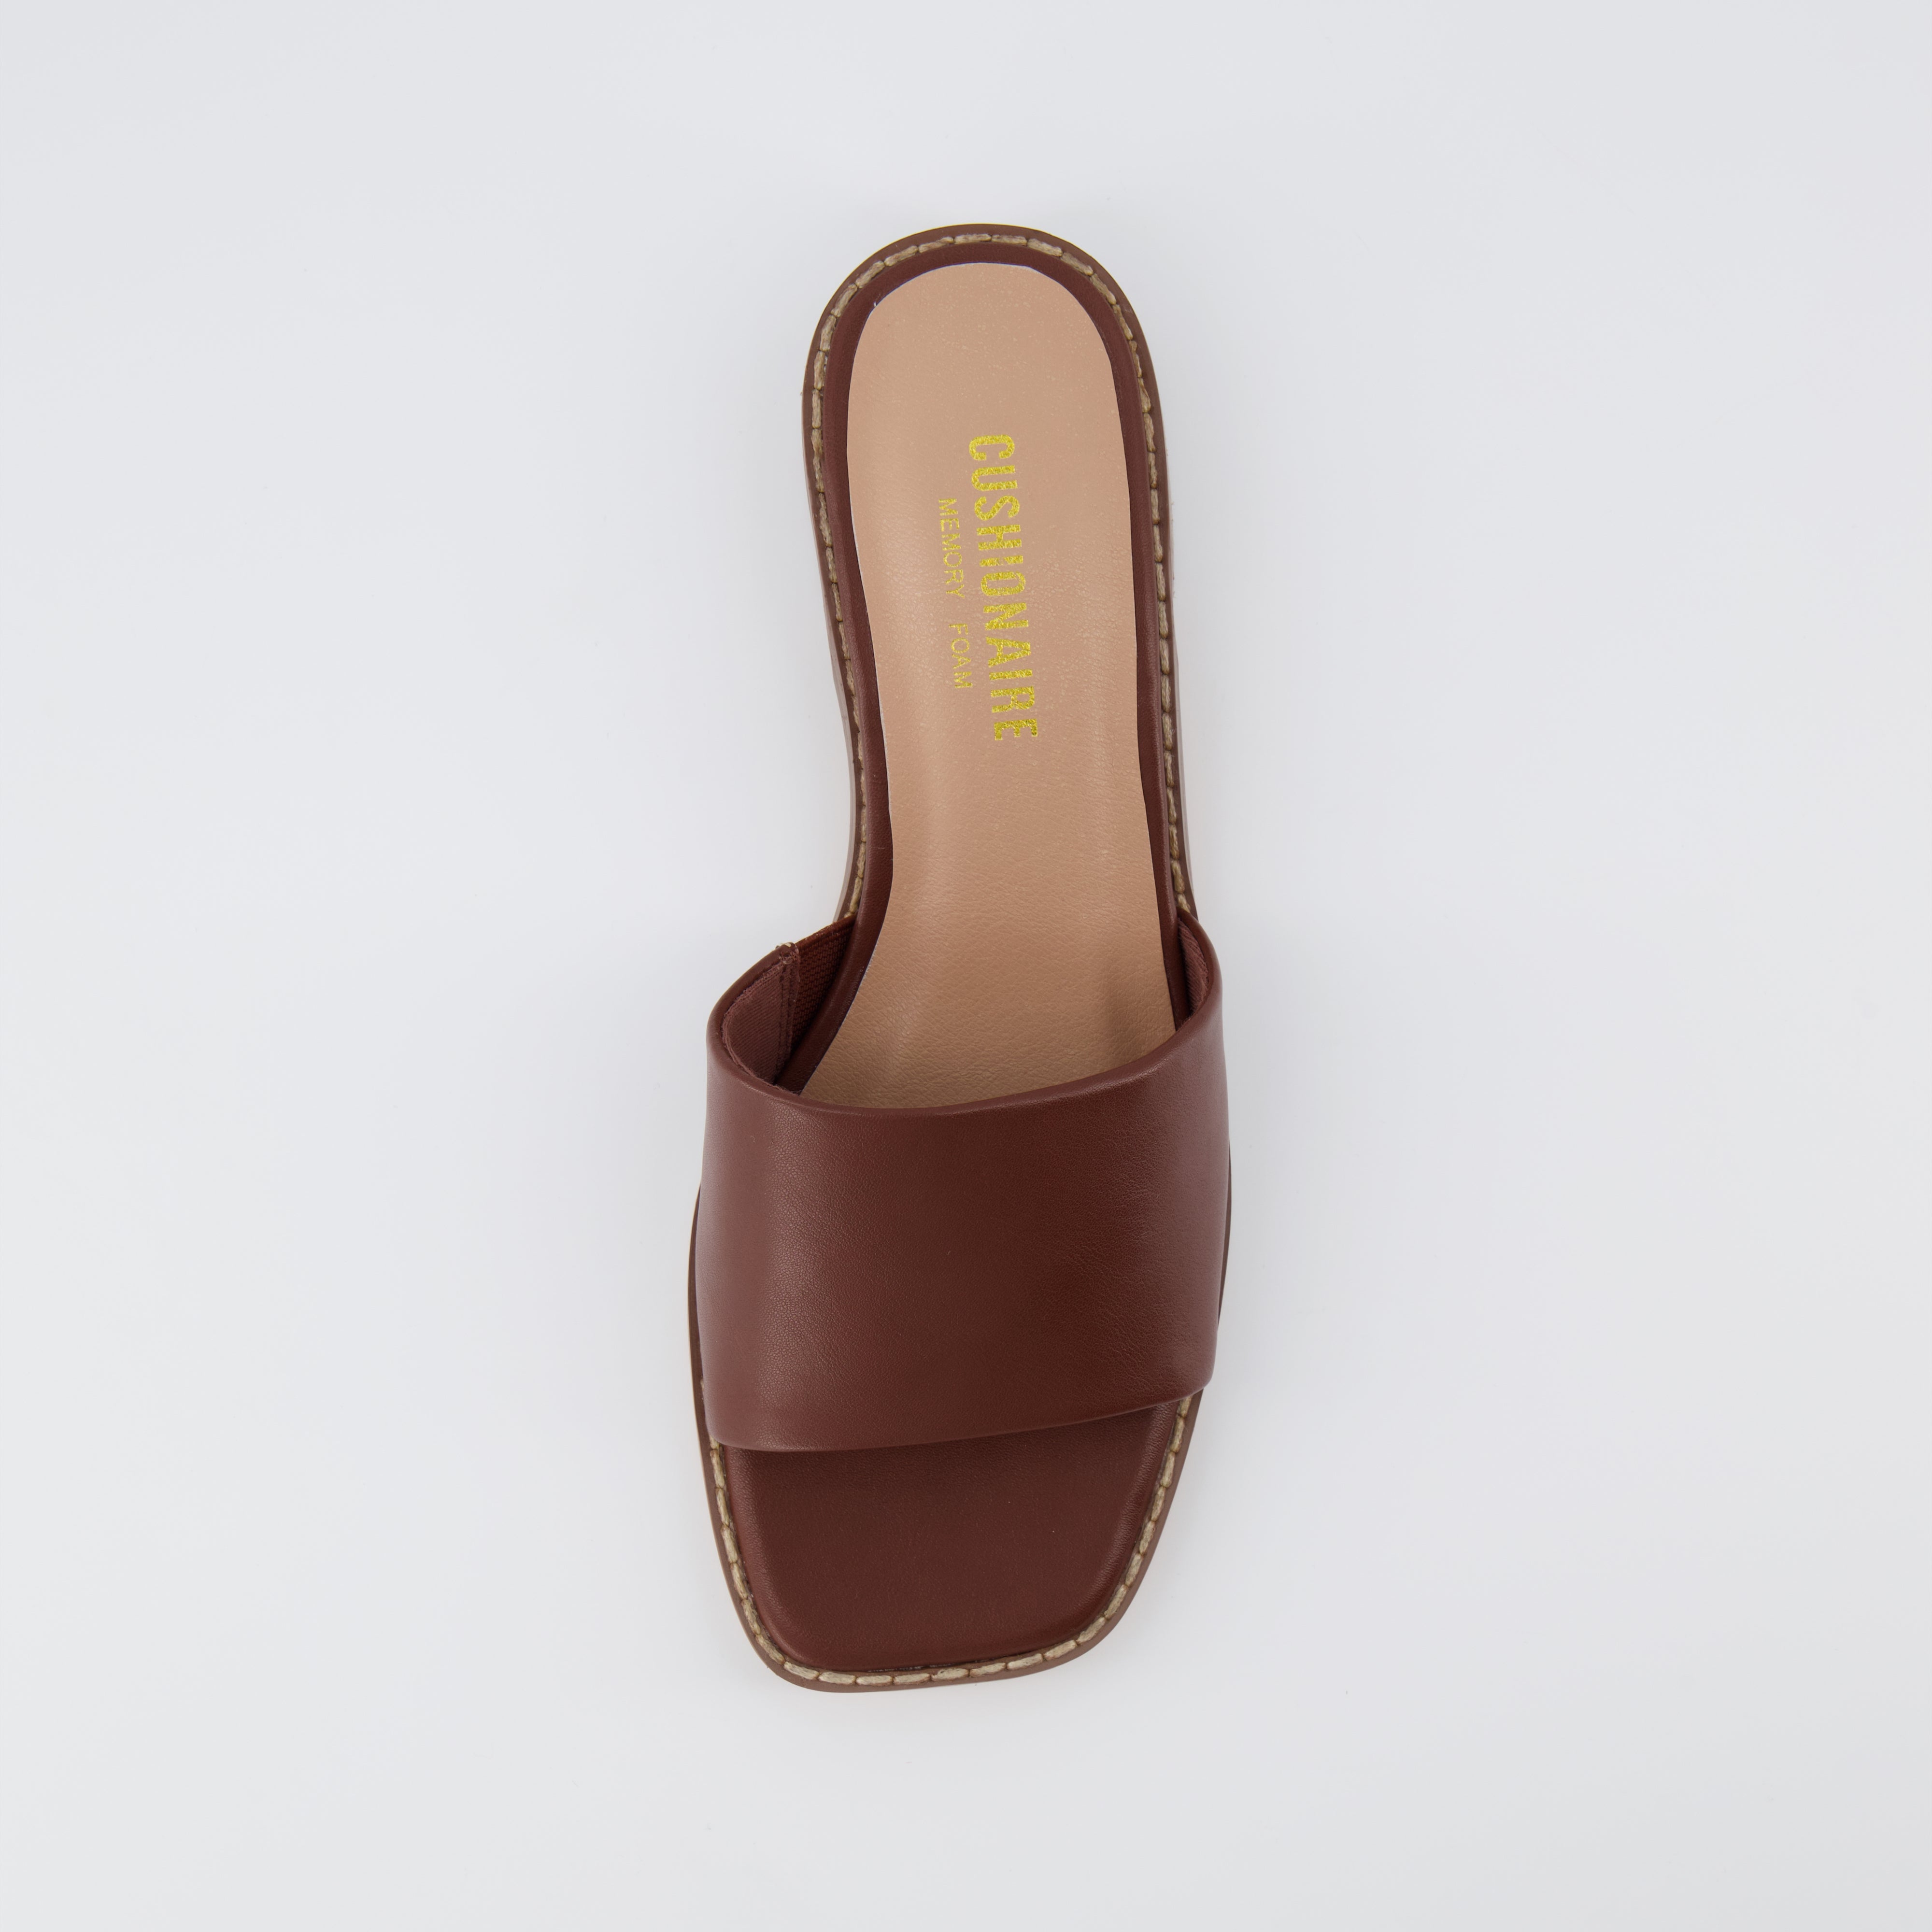 Sage Slide Sandals